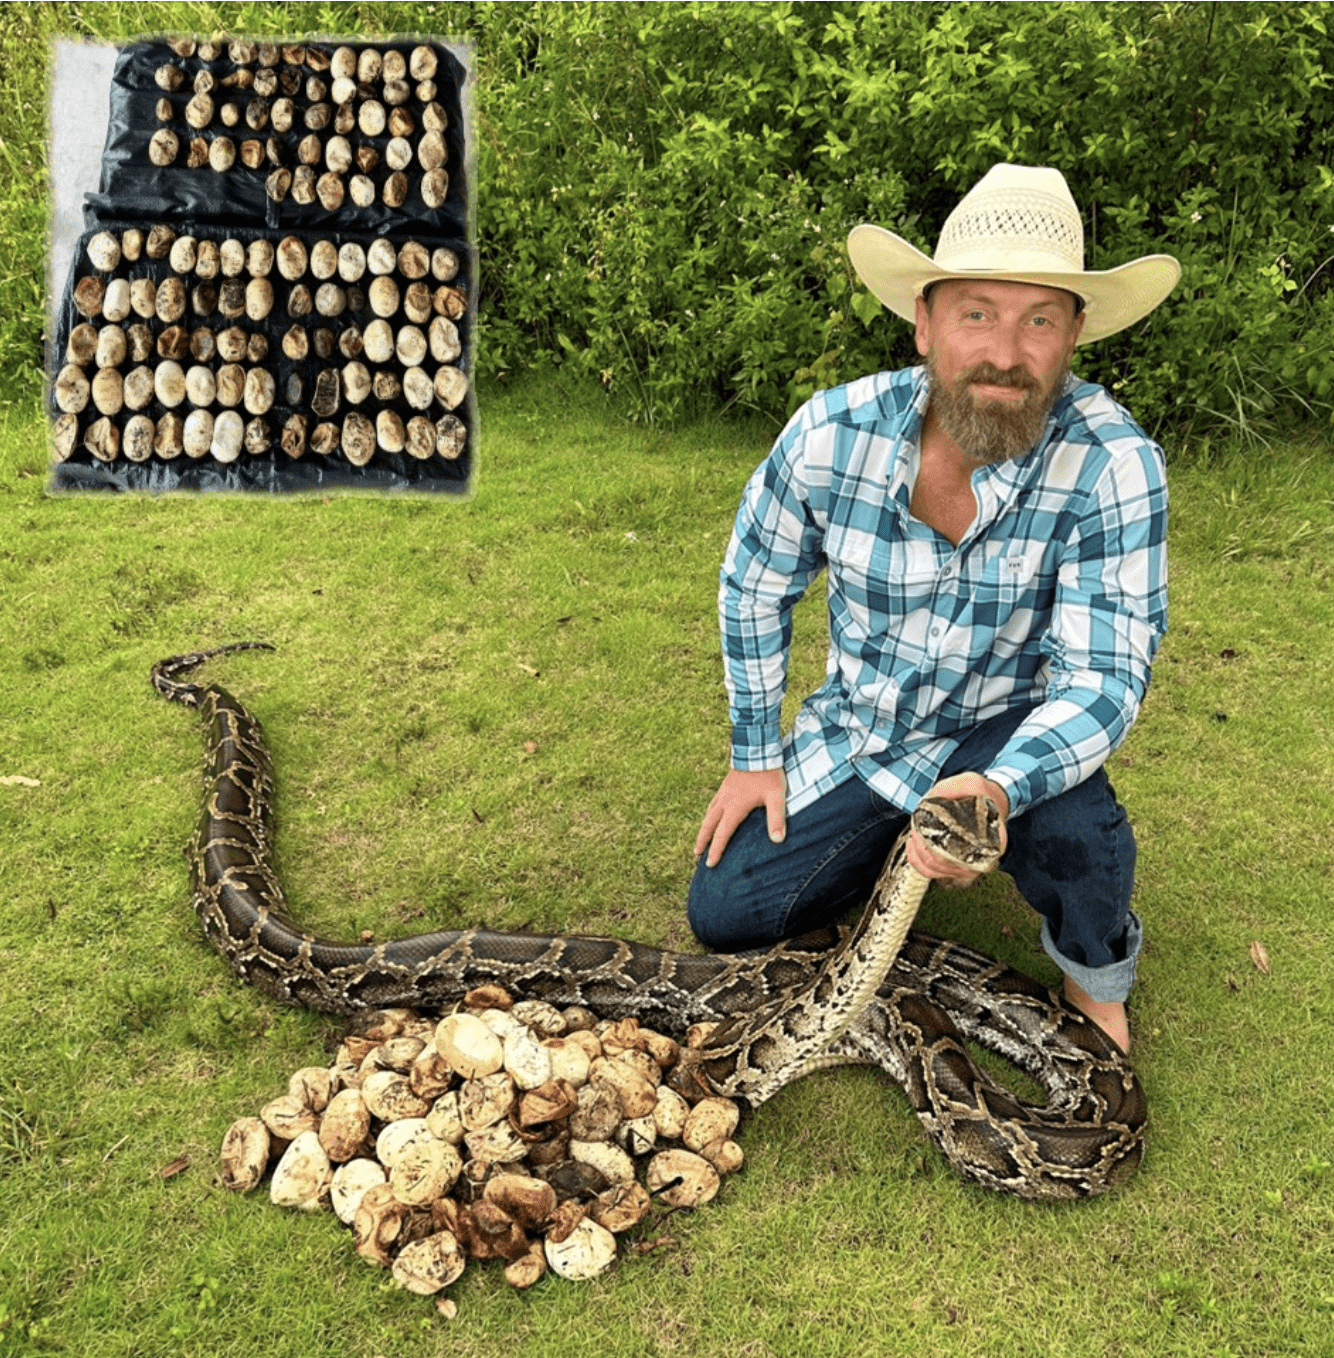 #Snake photo courtesy of Brandon Rahe Inset photo of the #invasive #python eggs courtesy of University of Florida